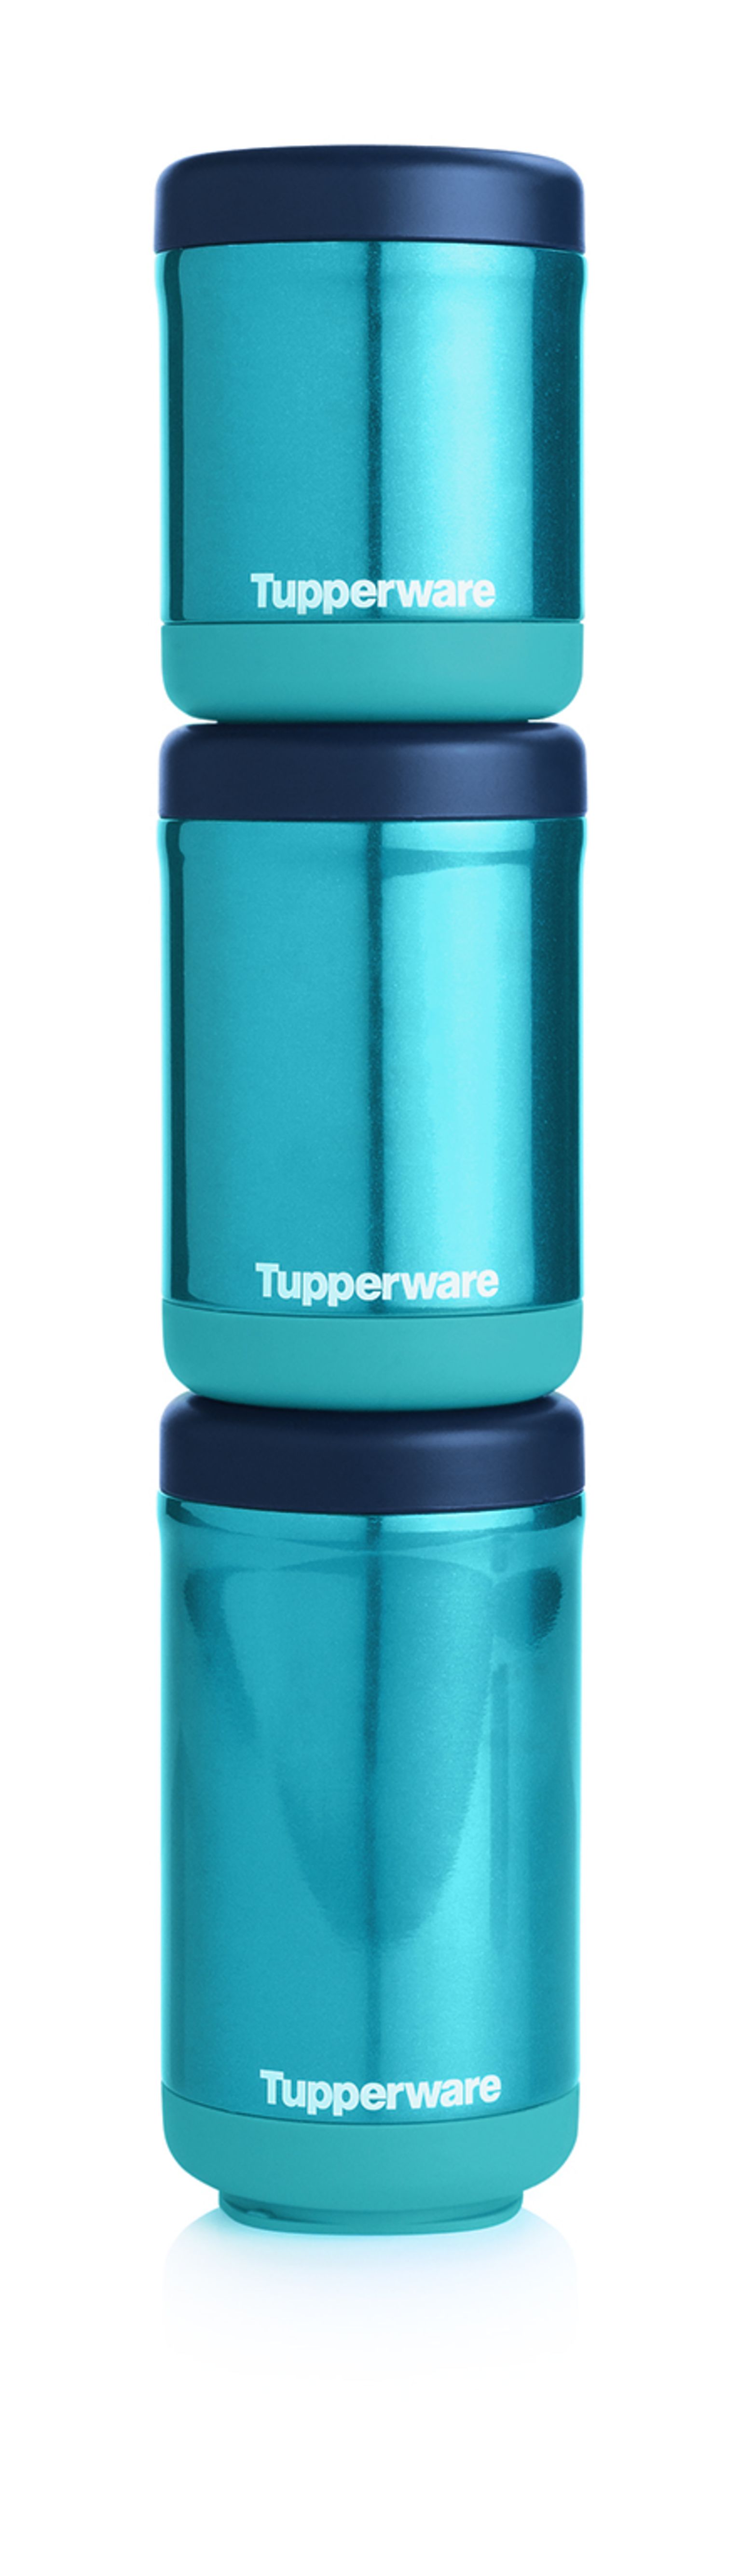 tupperware thermal food jar